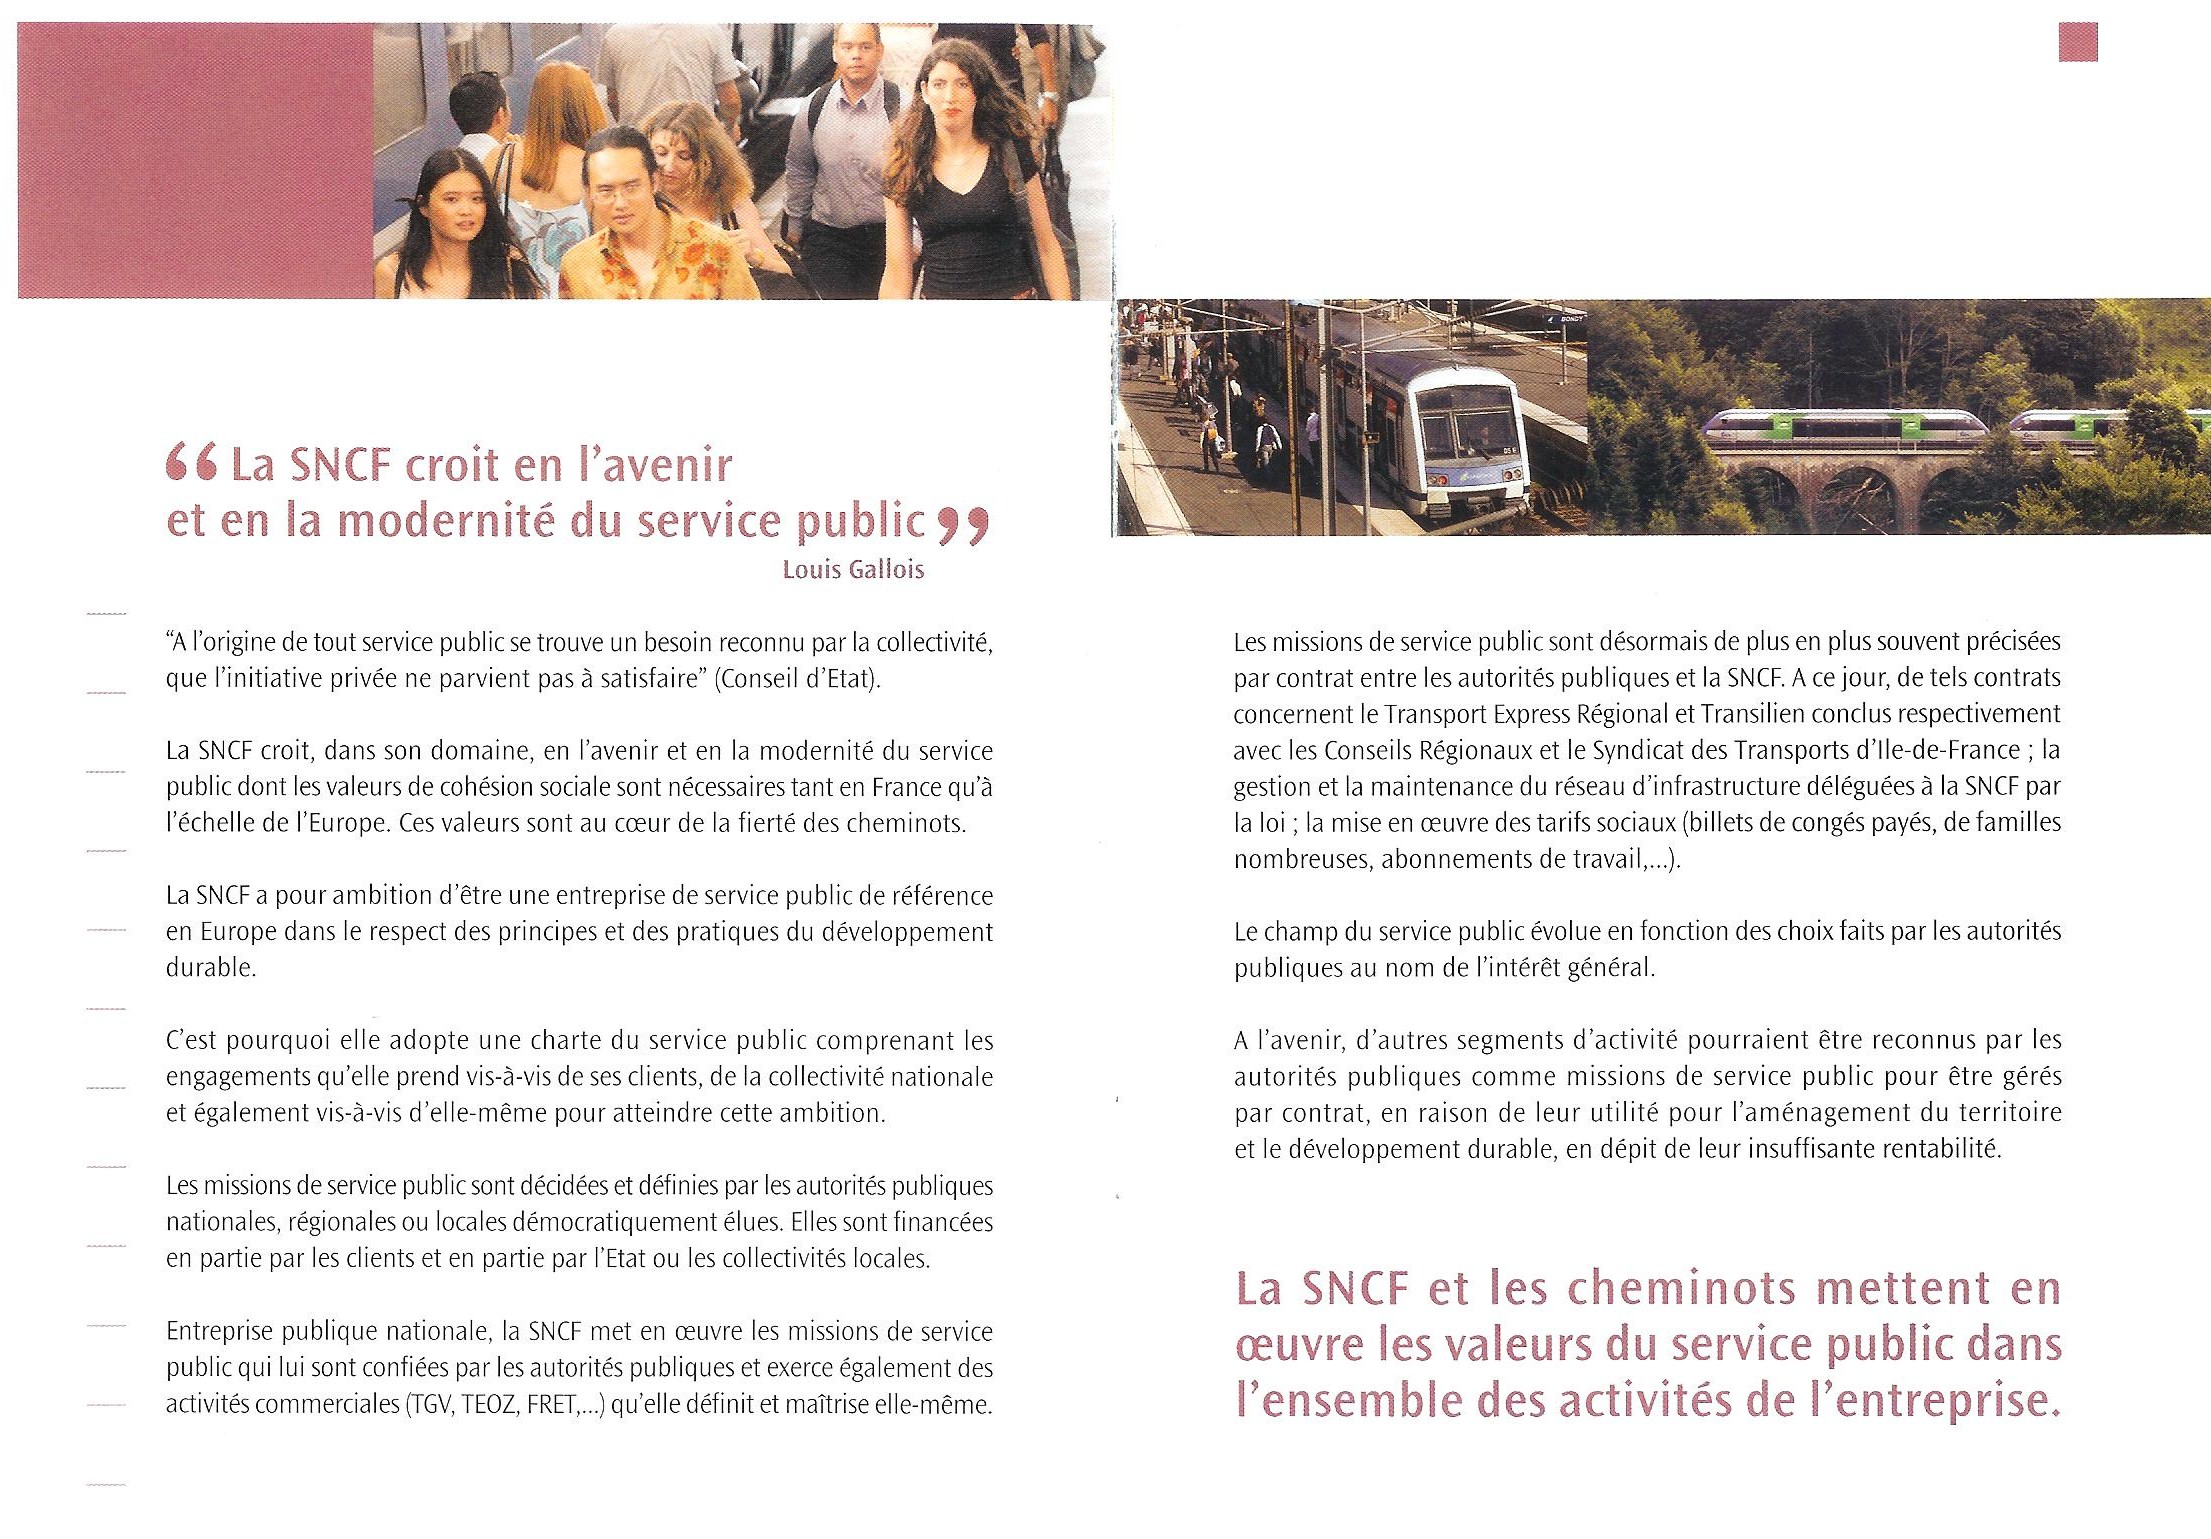 charte-du-service-public-sncf-2-3-2004-101